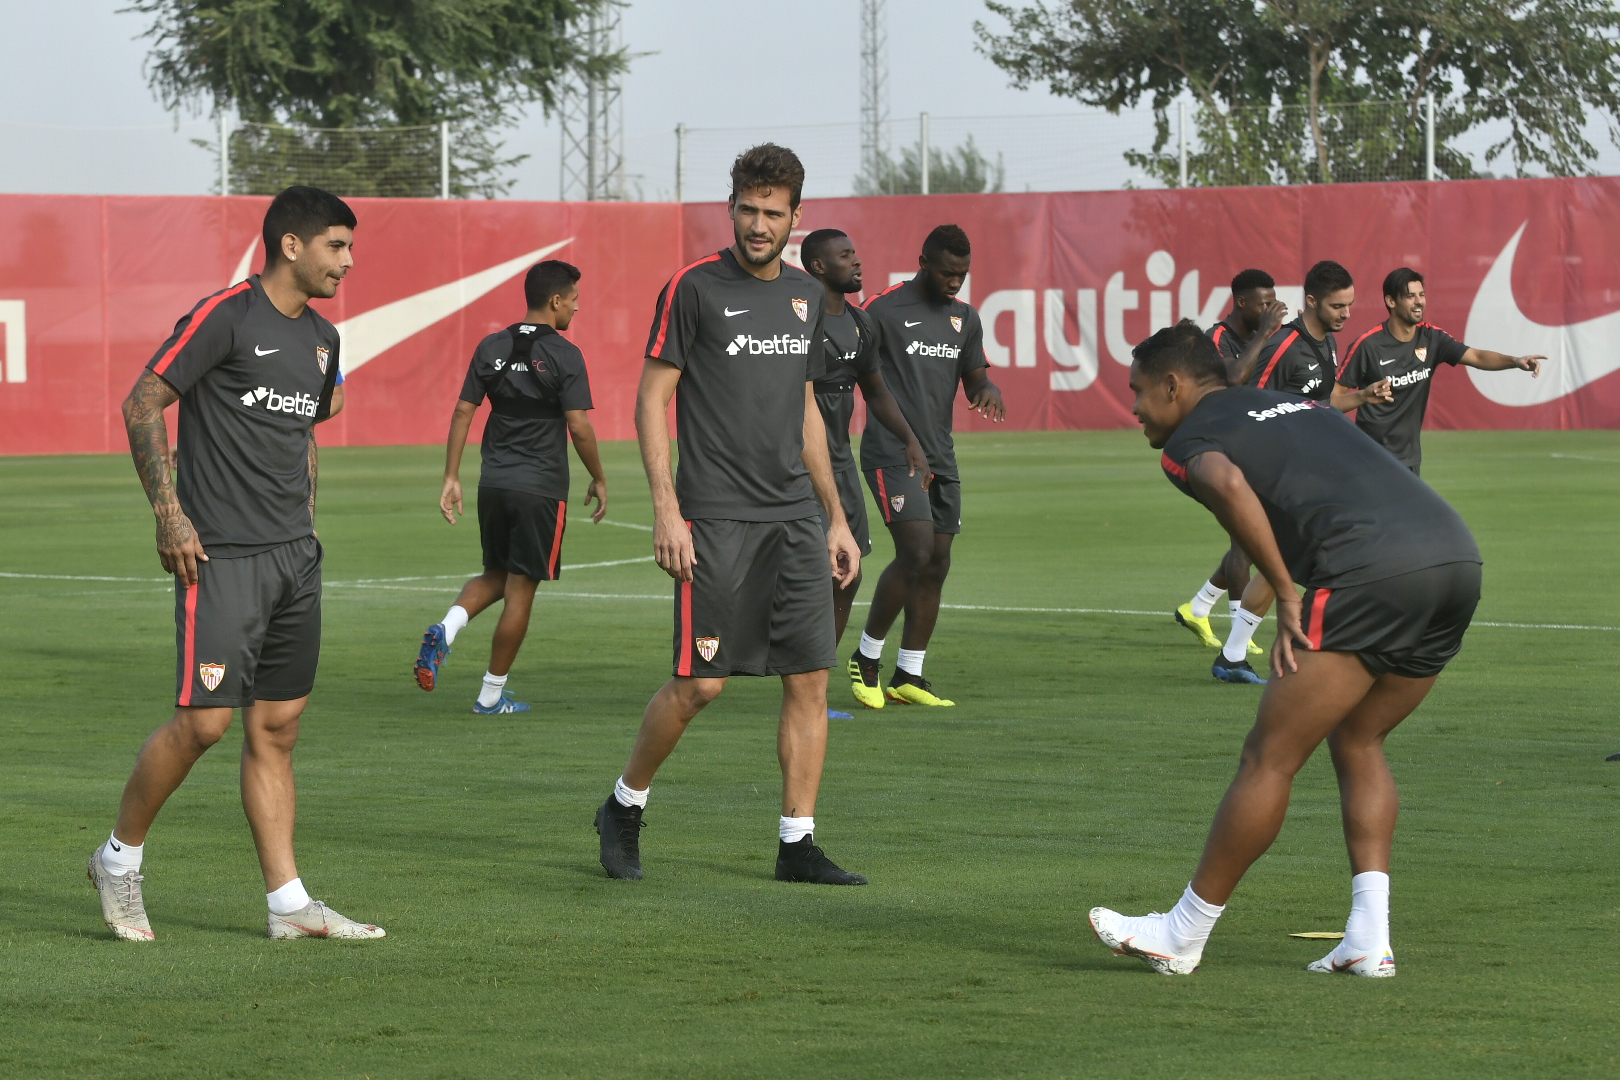 Sevilla training in the Ciudad Deportiva